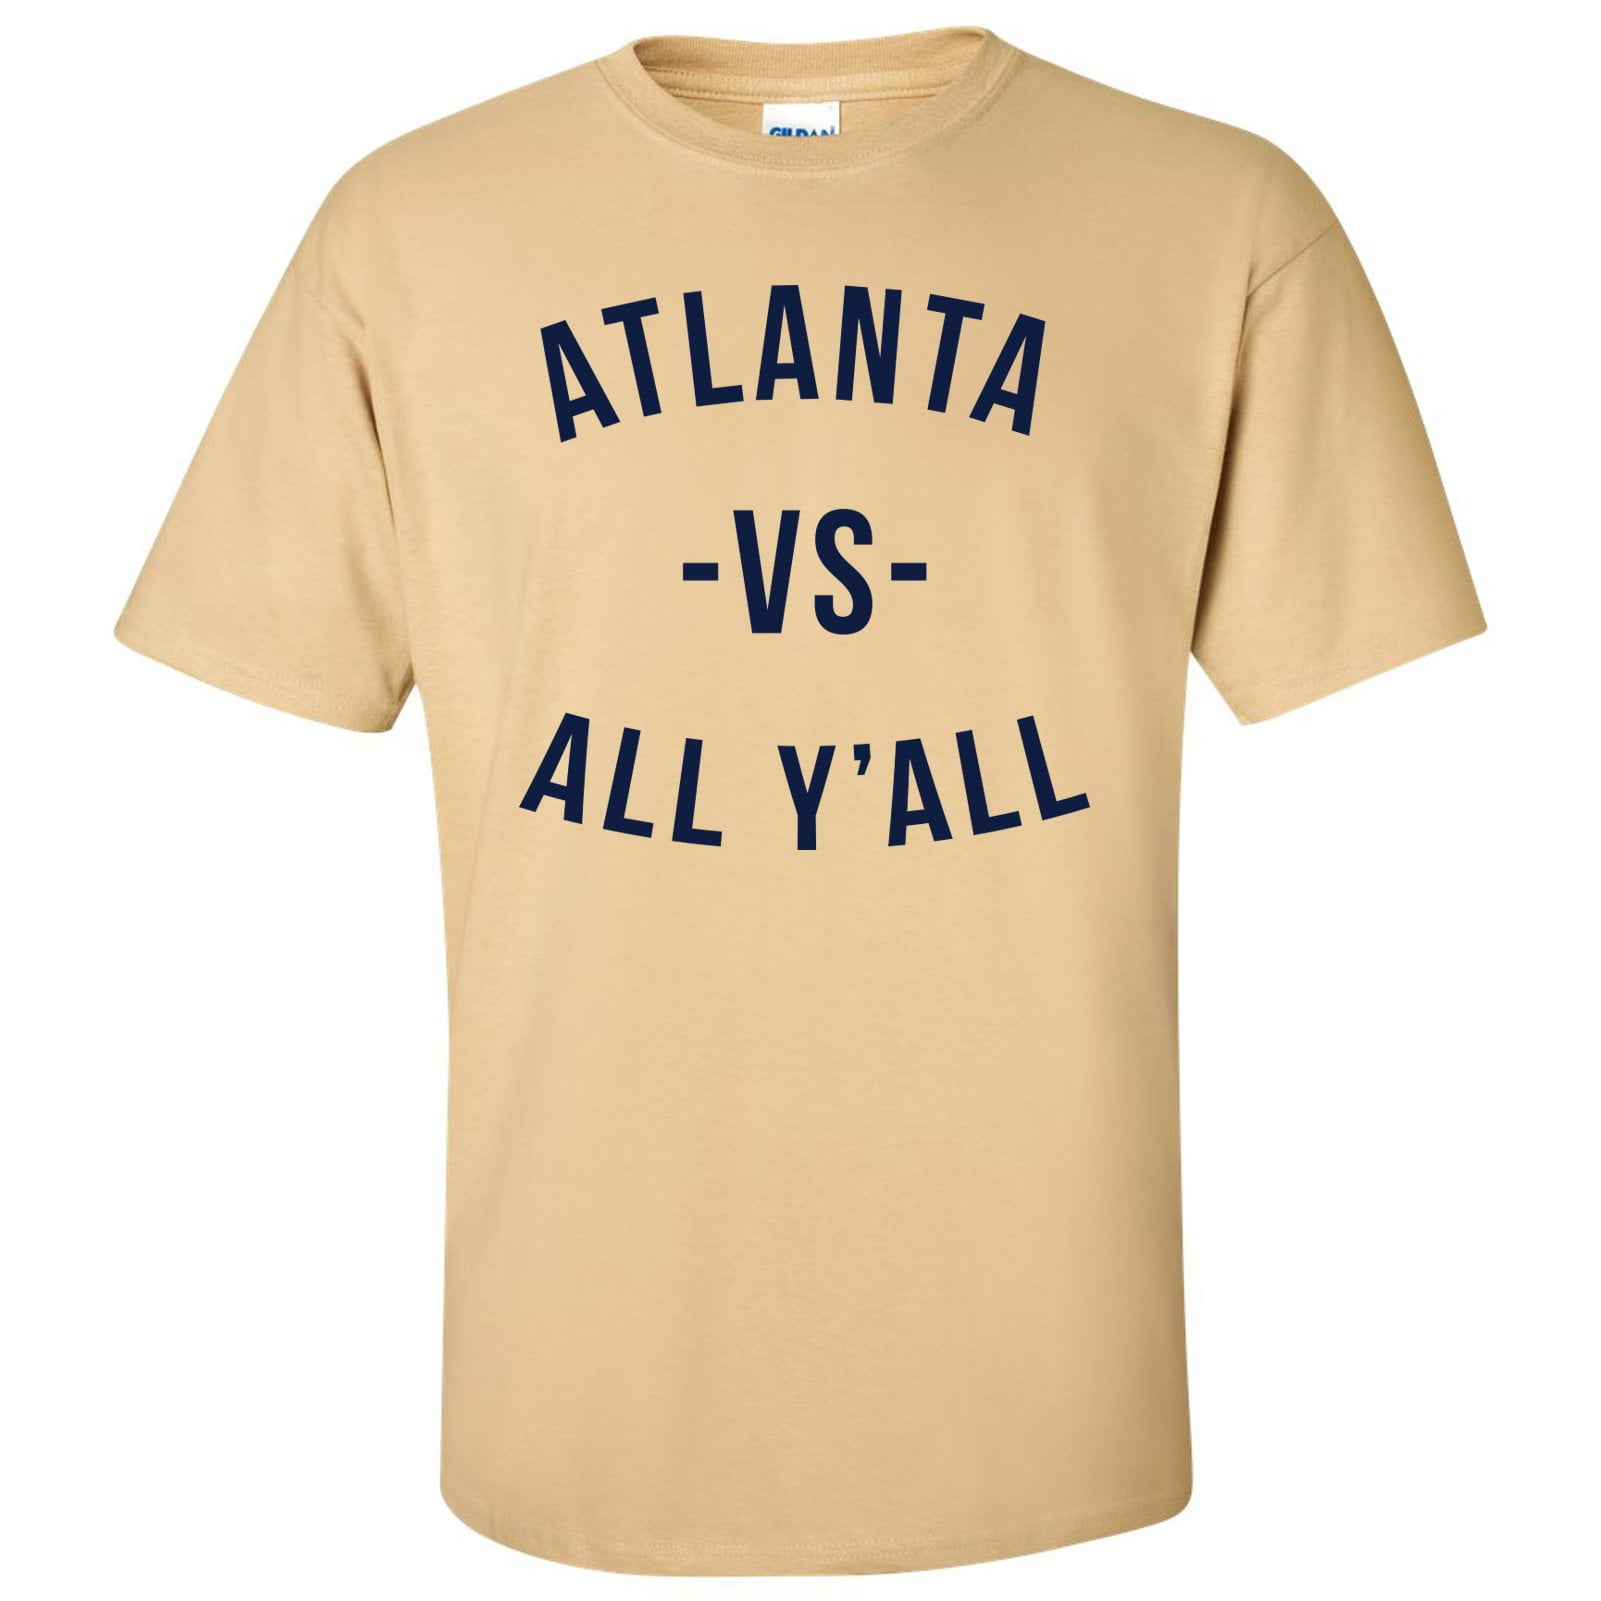 Louisiana Vs All Y'all T Shirt - Louisiana Football T Shirt